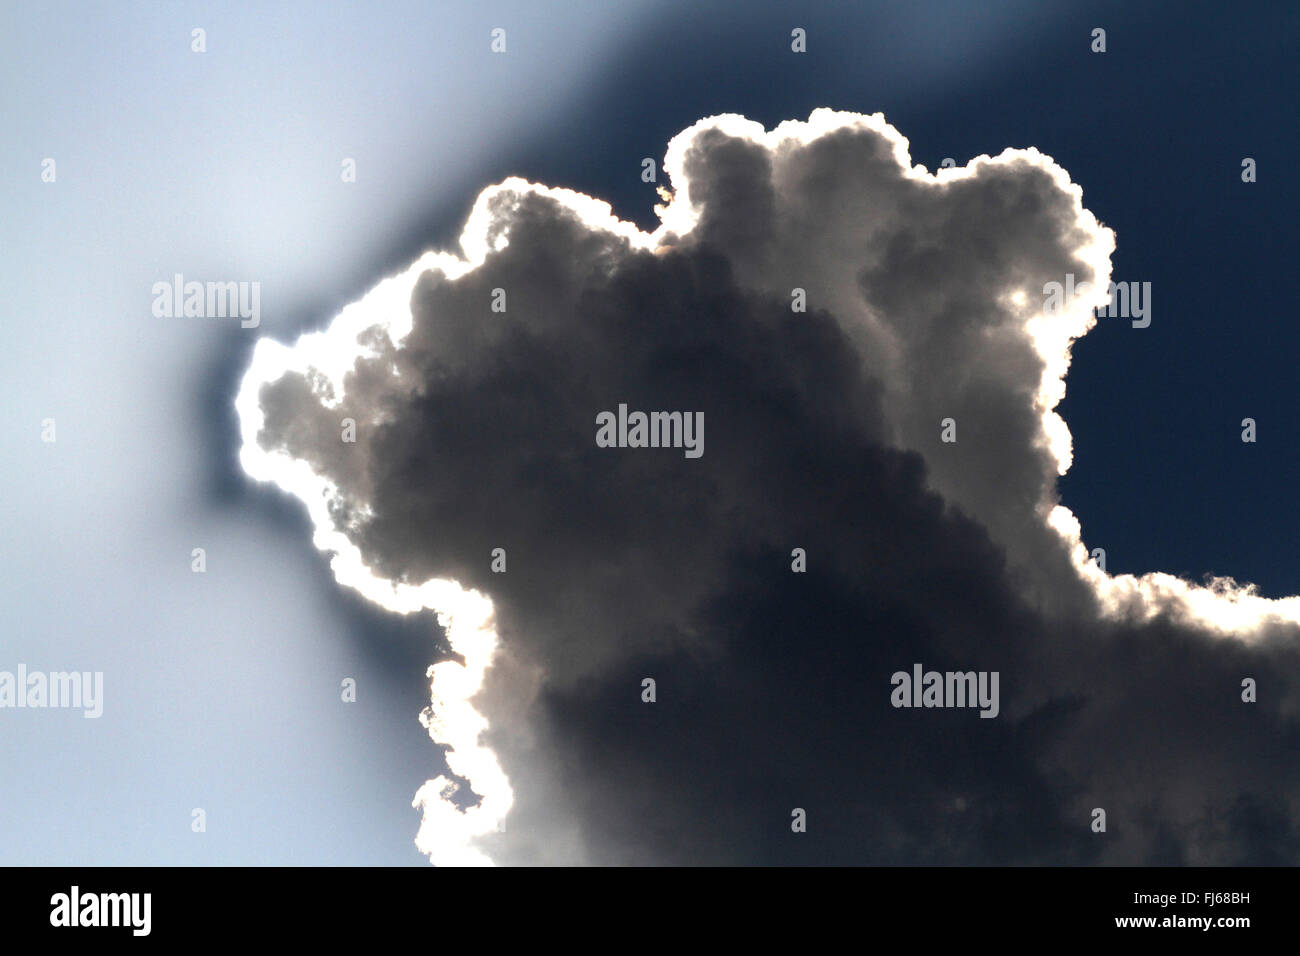 Kumuluswolke bei Gegenlicht, Deutschland Stockfoto